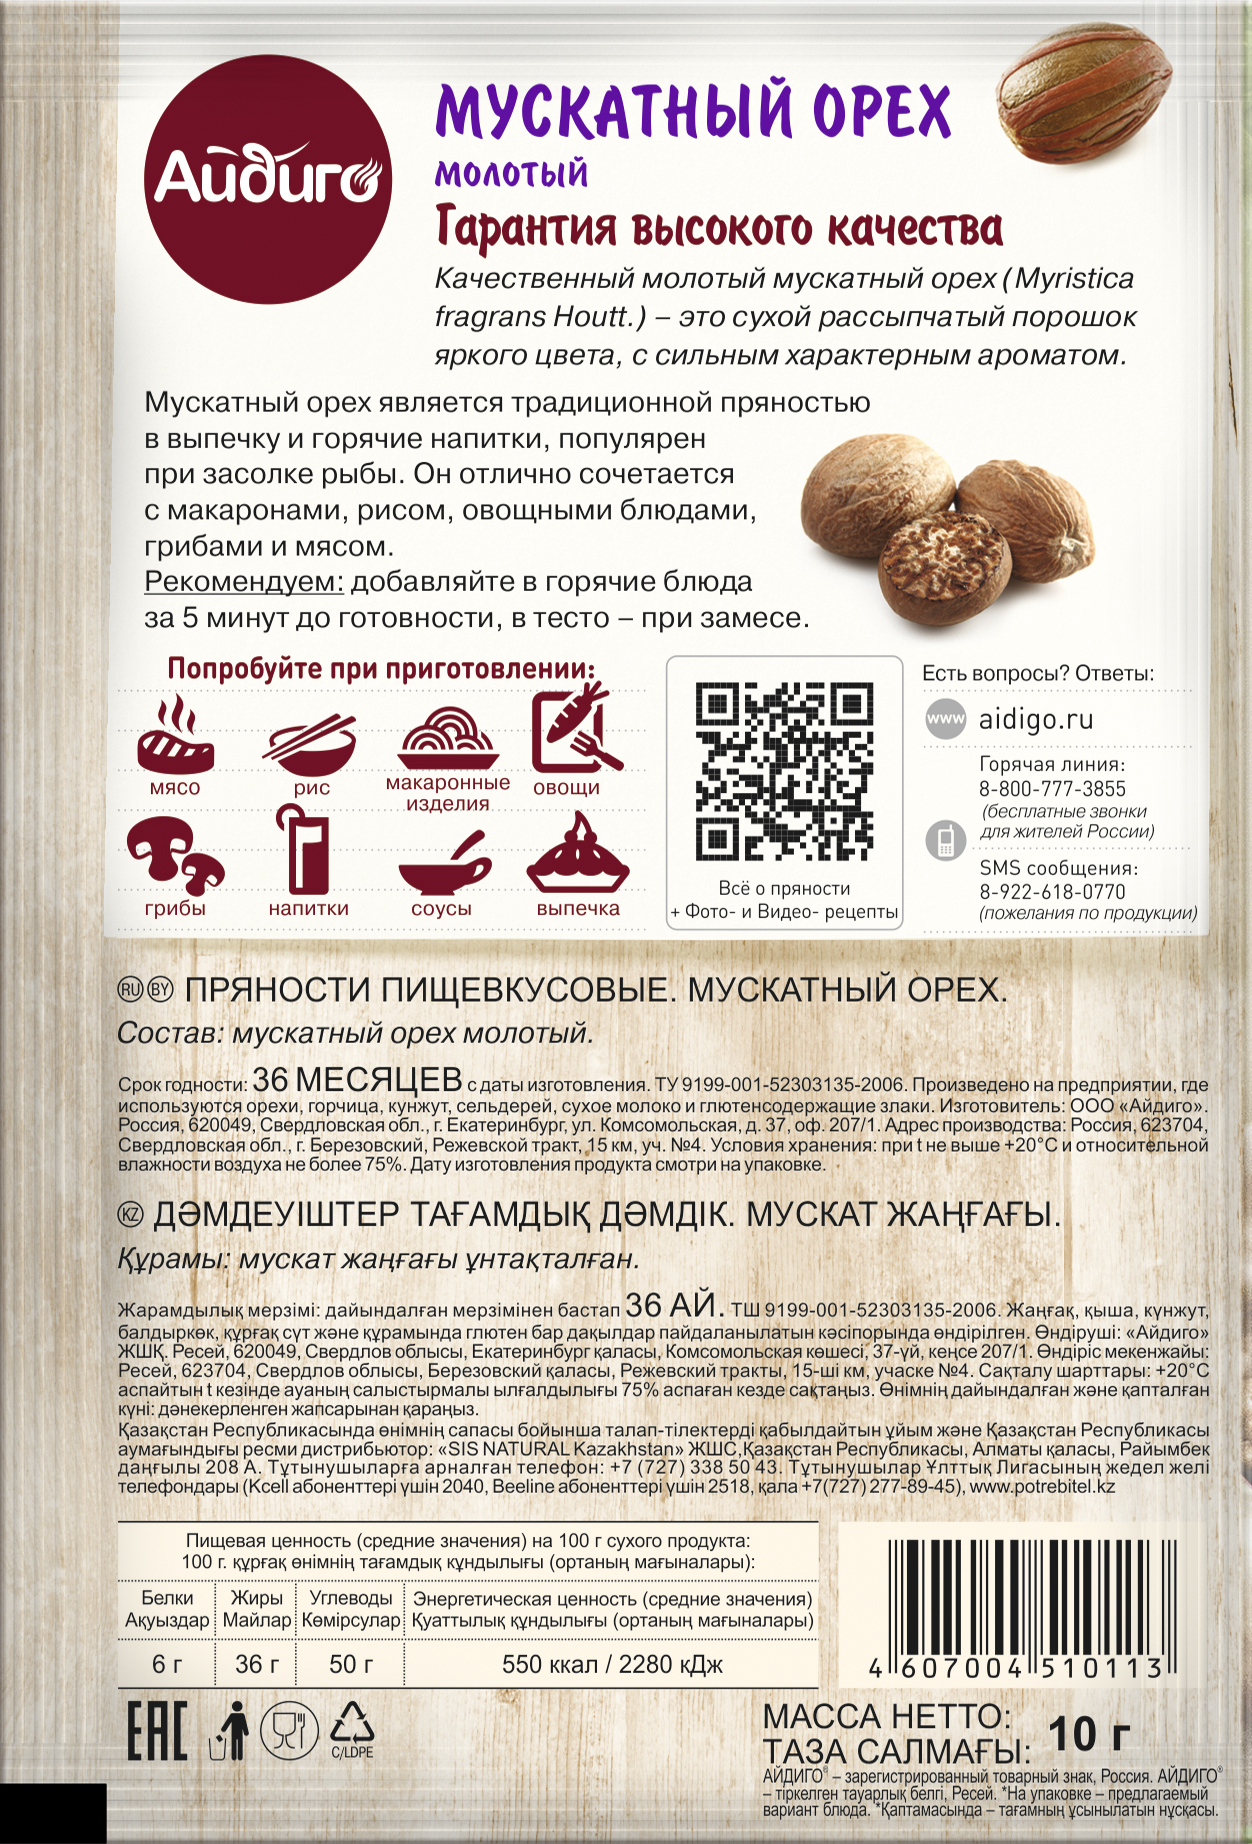 О полезных и опасных свойствах мускатного ореха: кулинарное использование и противопоказания к употреблению